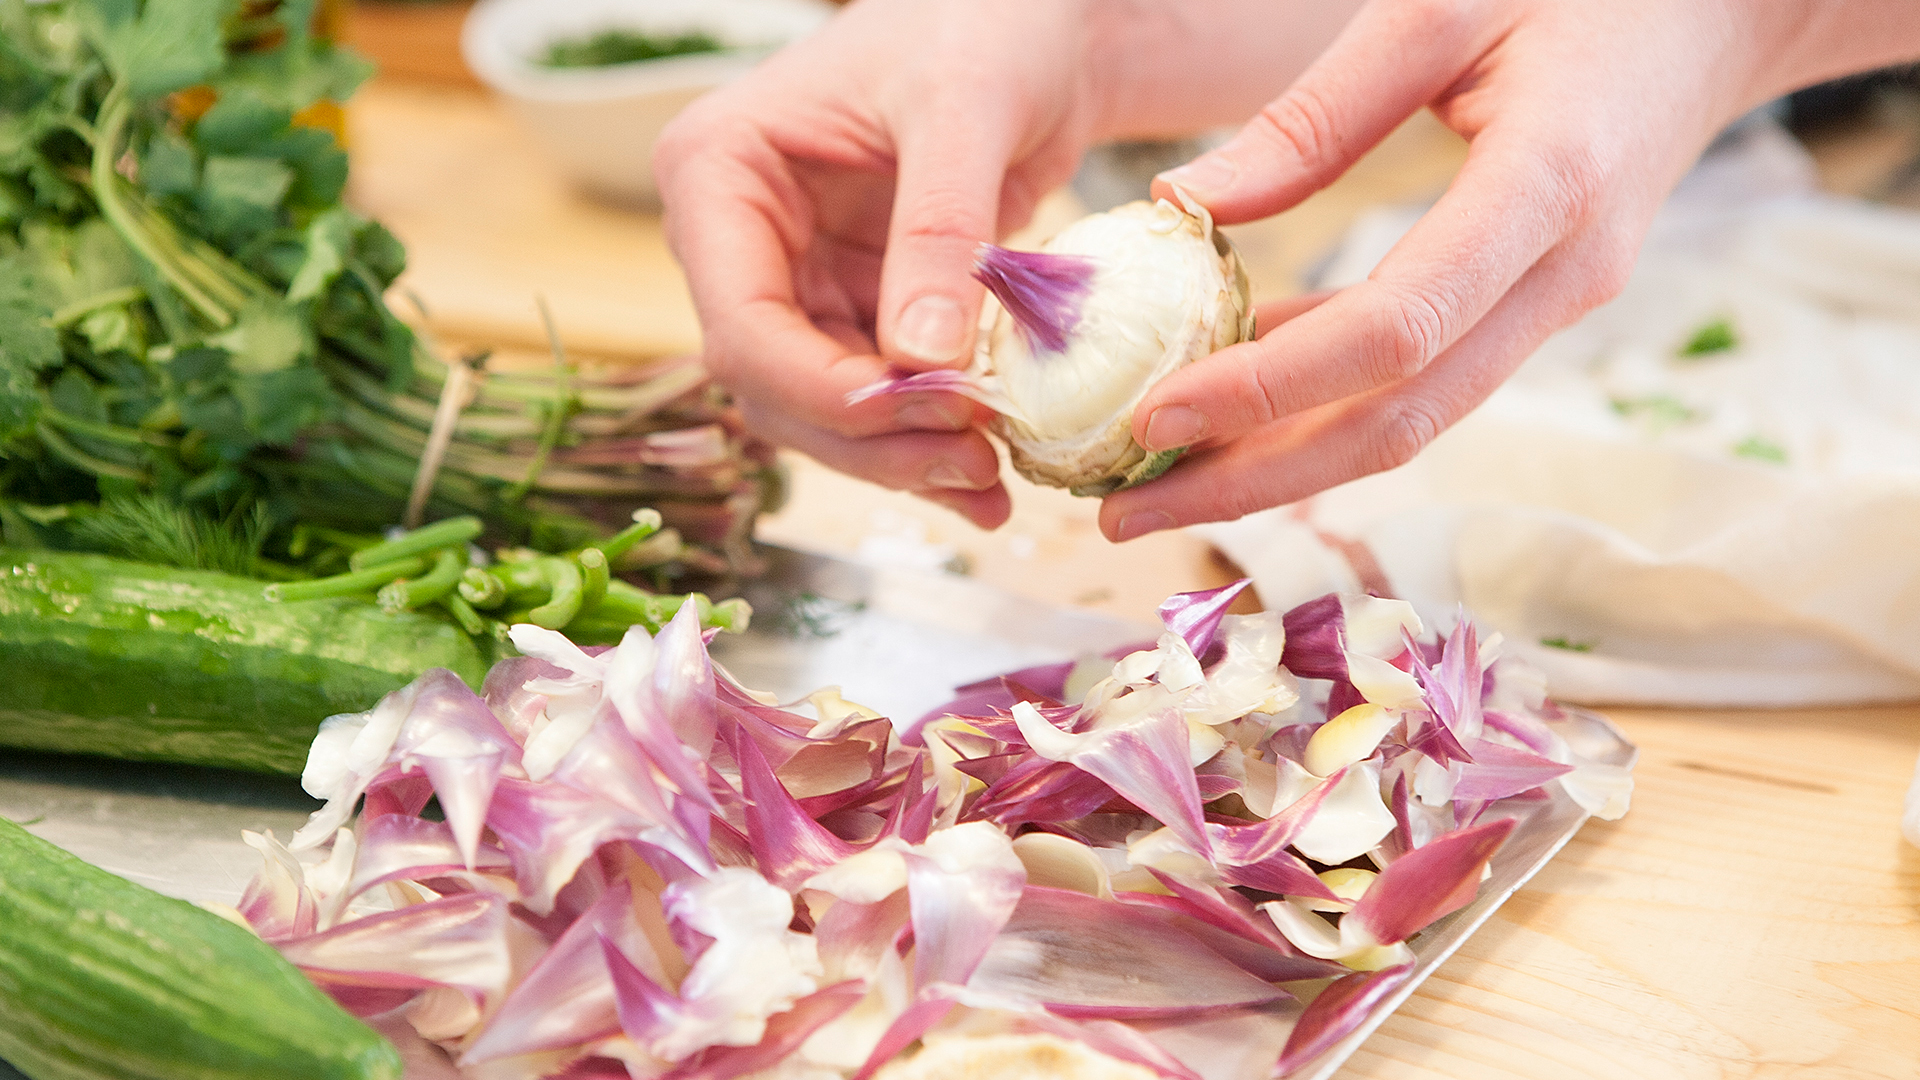 Preparing-artichoke-hearts-in-Greece-Foodadit